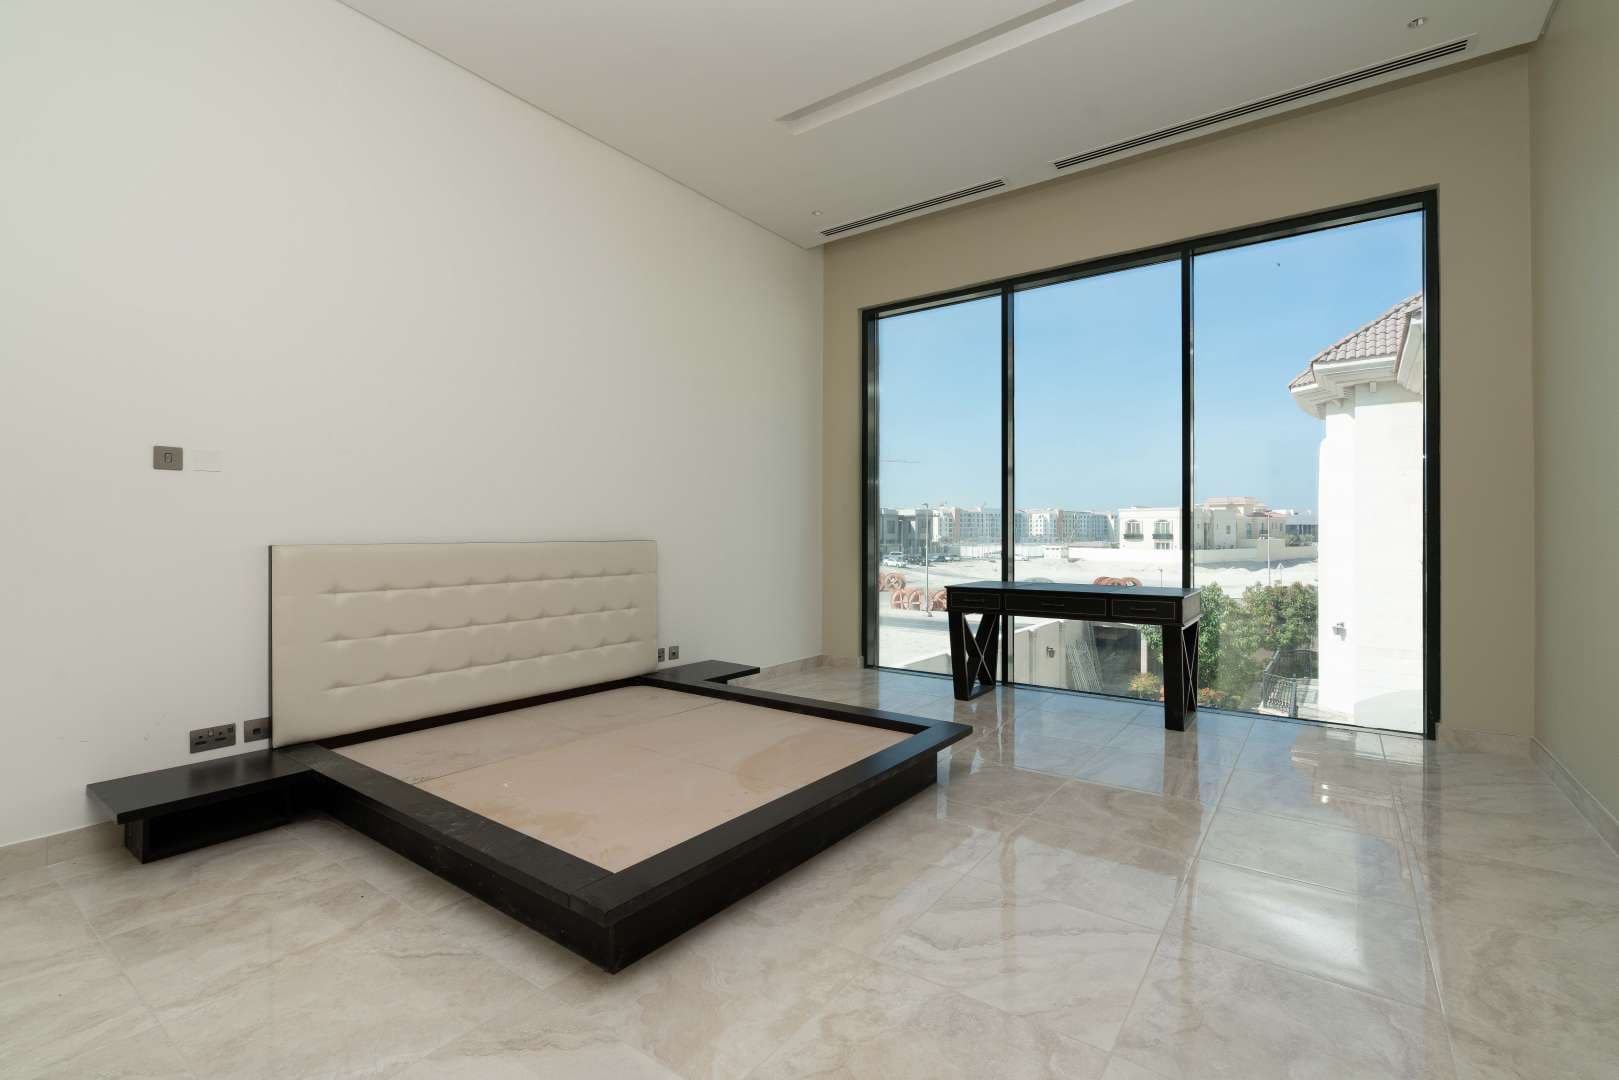 6 Bedroom Villa For Sale Pearl Jumeirah Villas Lp04795 2a07b2e411d2dc00.jpg